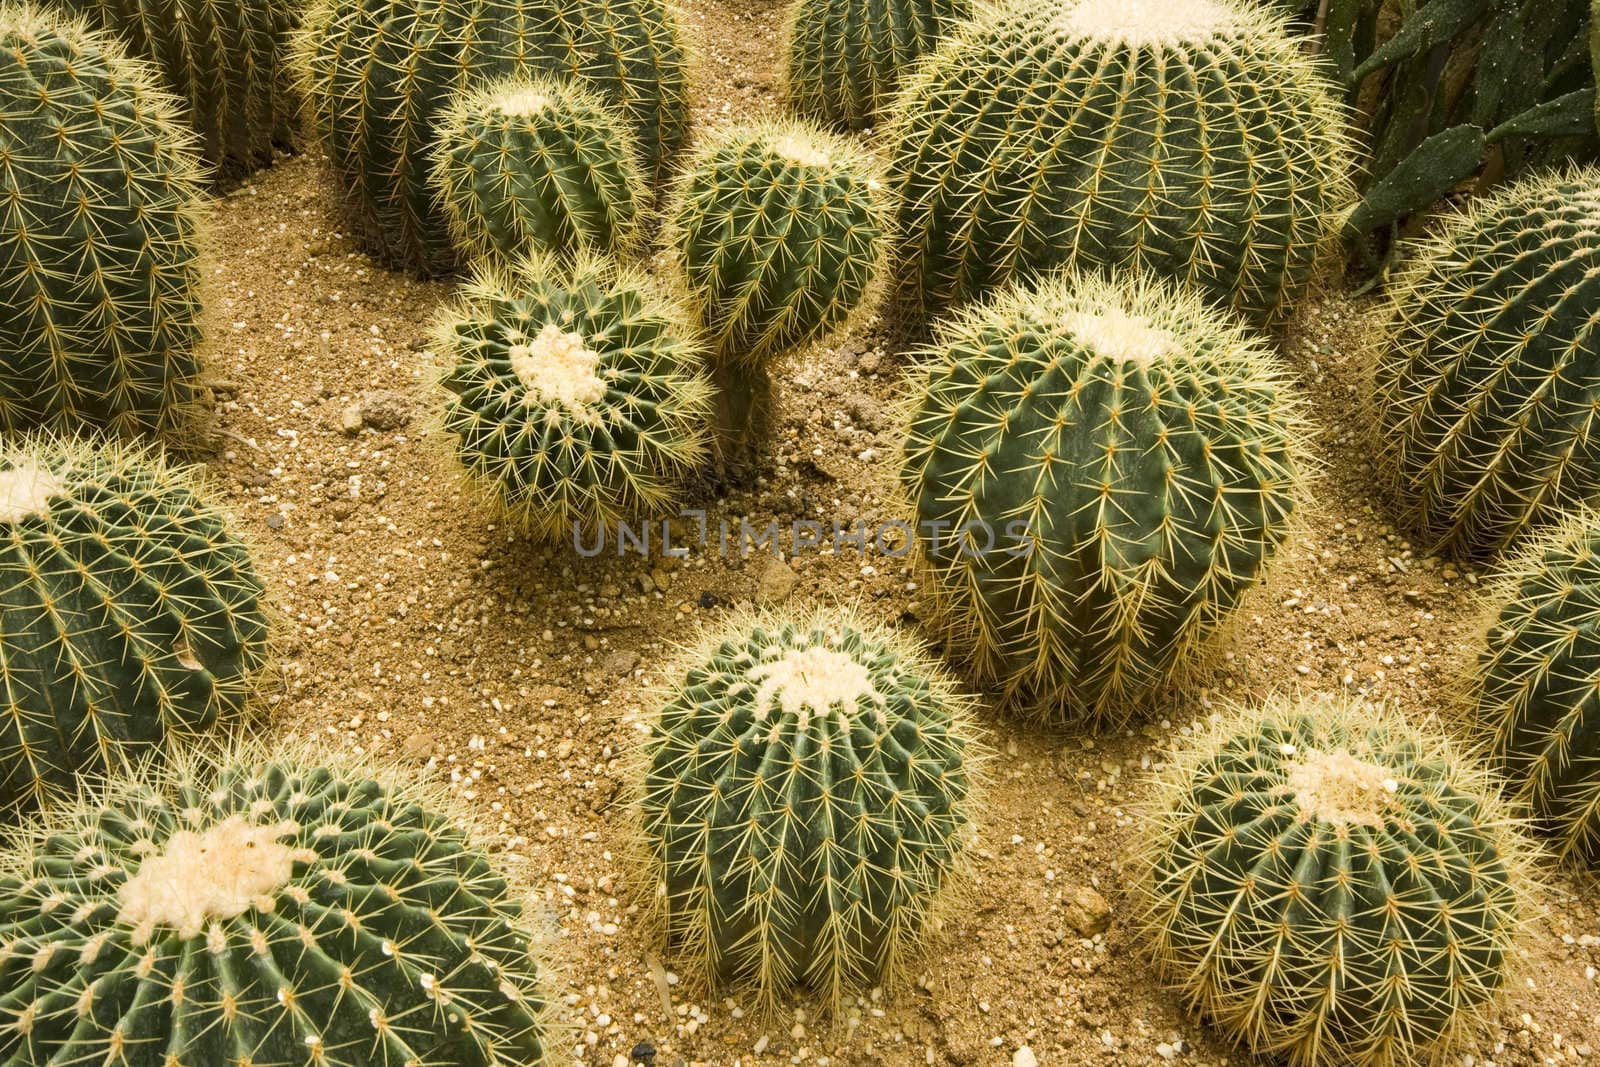 Cactus garden  by cozyta